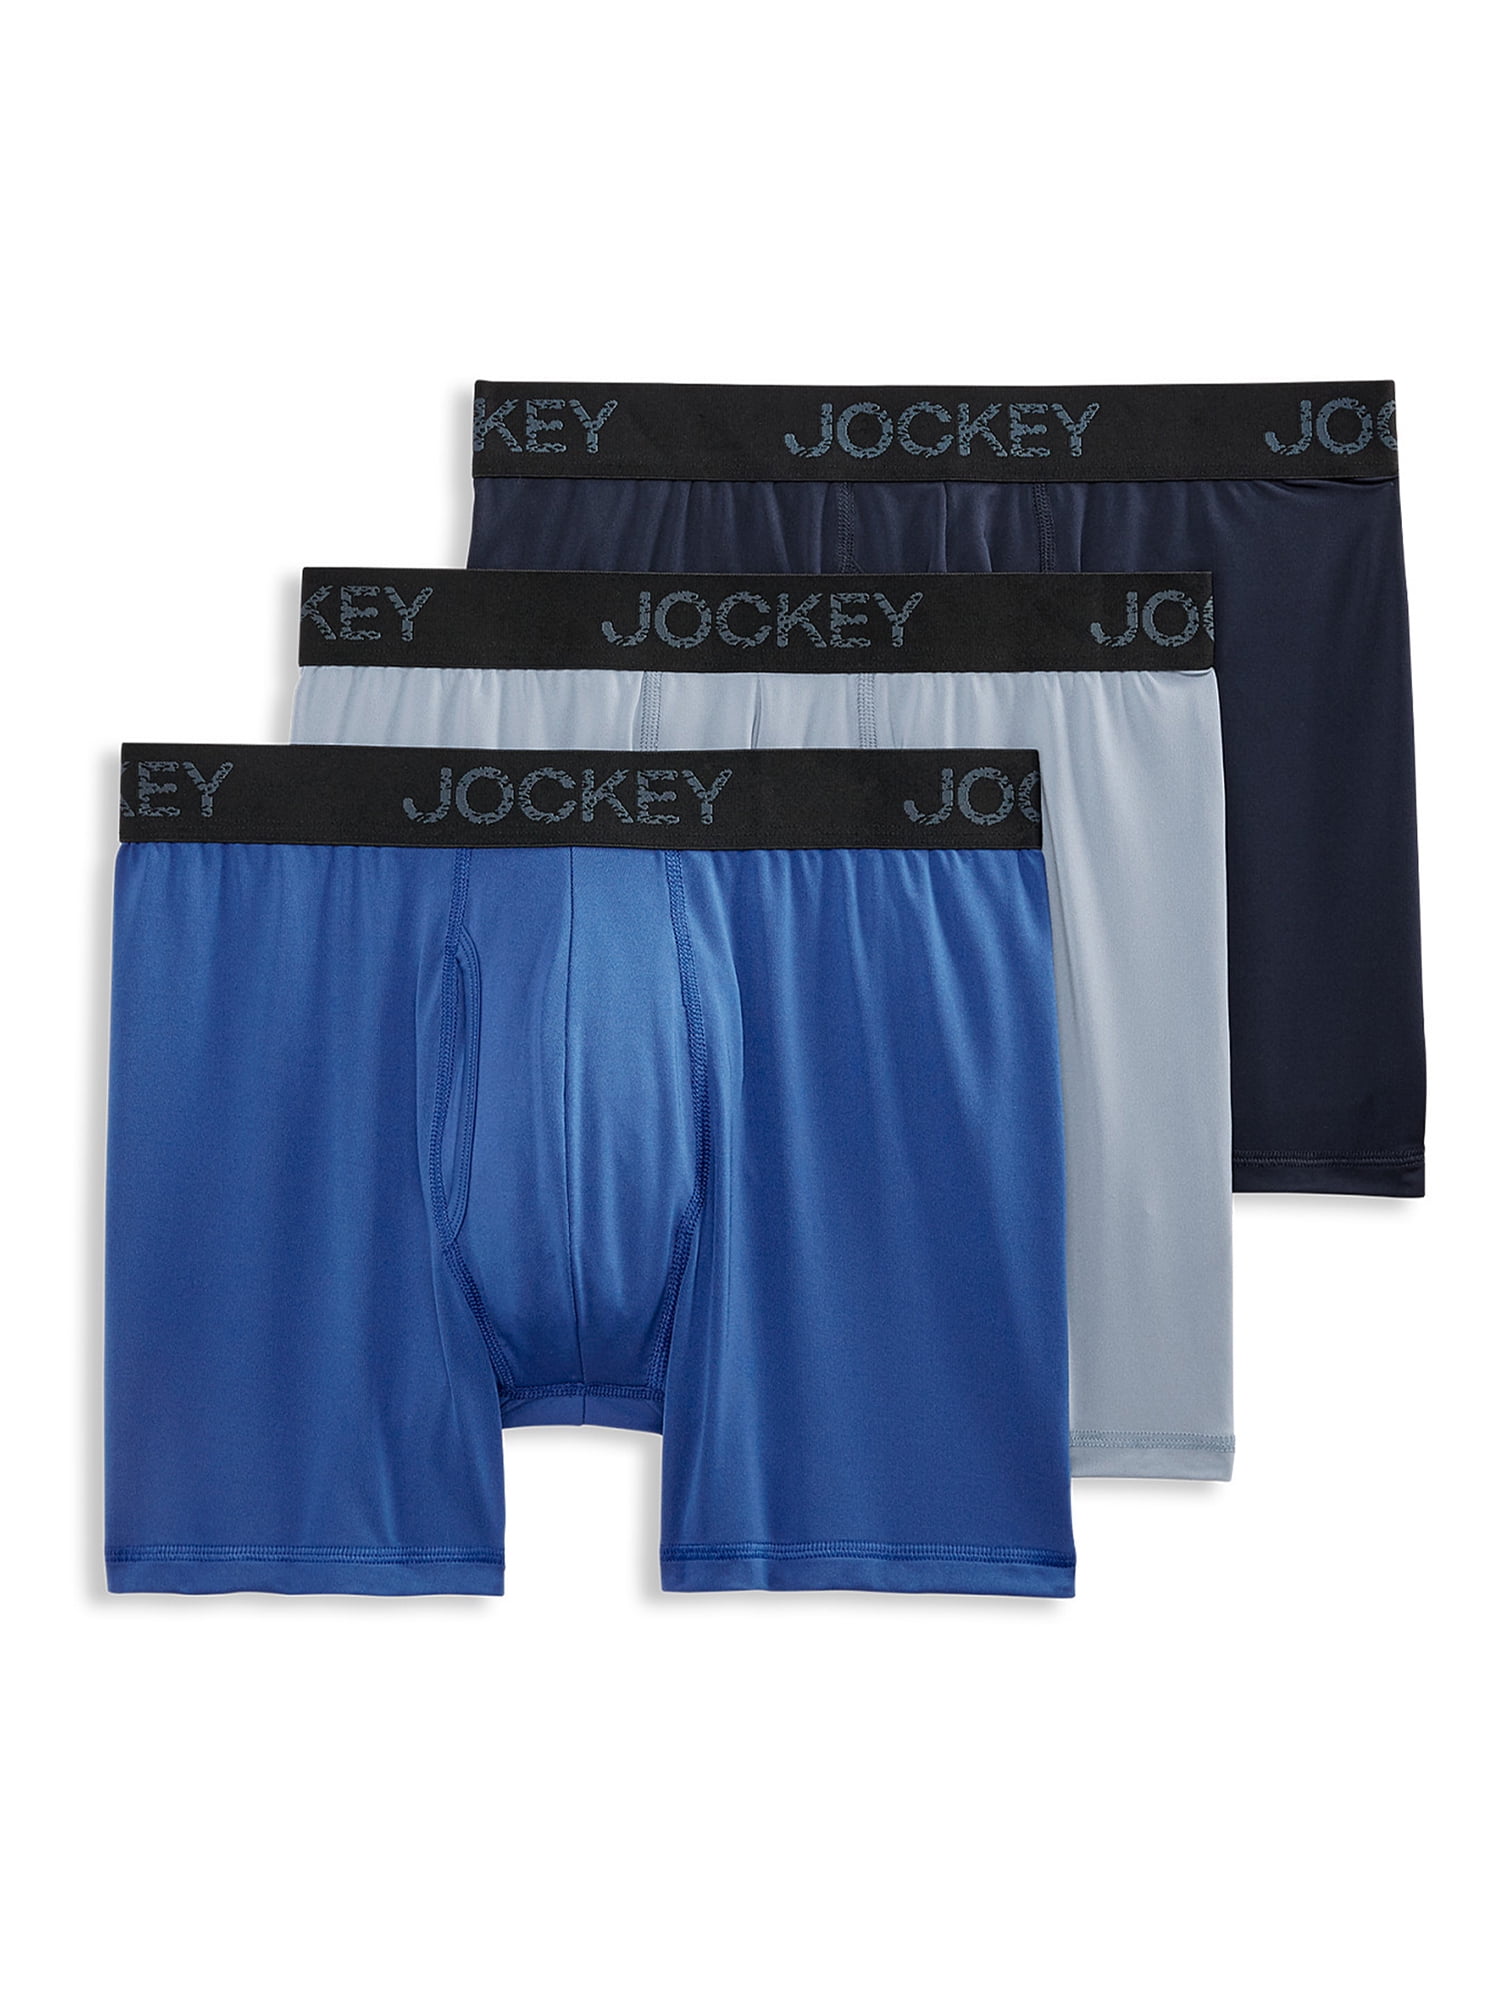 Jockey® Essentials Men's Microfiber Boxer Brief Underwear, Pack of 3,  Moisture Wicking Boxer Brief, Workout Underwear, Sizes Small, Medium,  Large